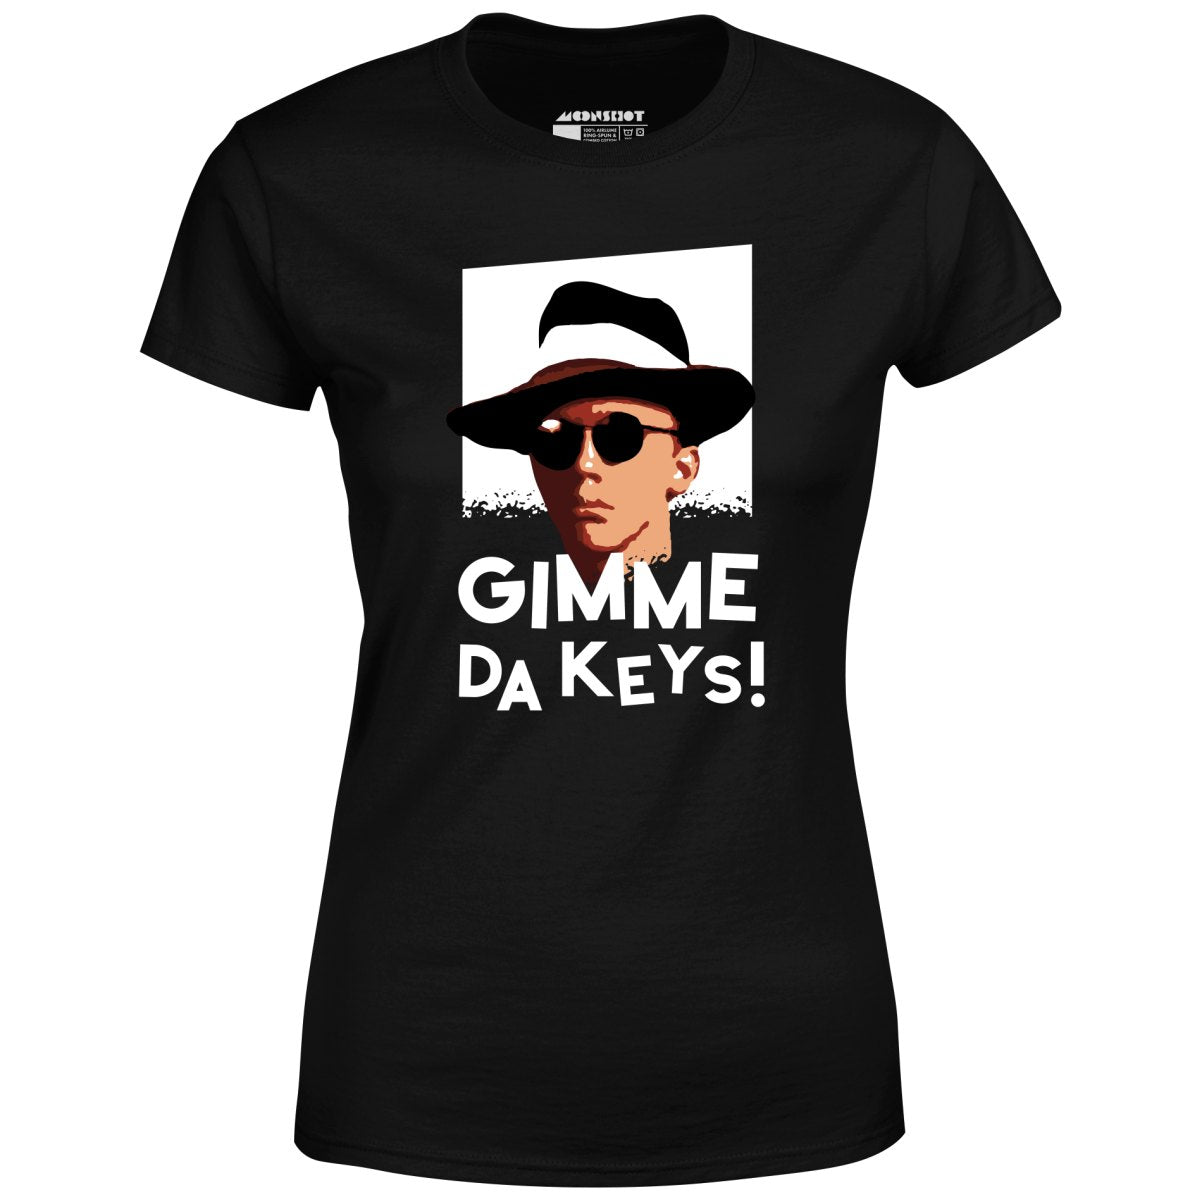 Gimme Da Keys! - Women's T-Shirt